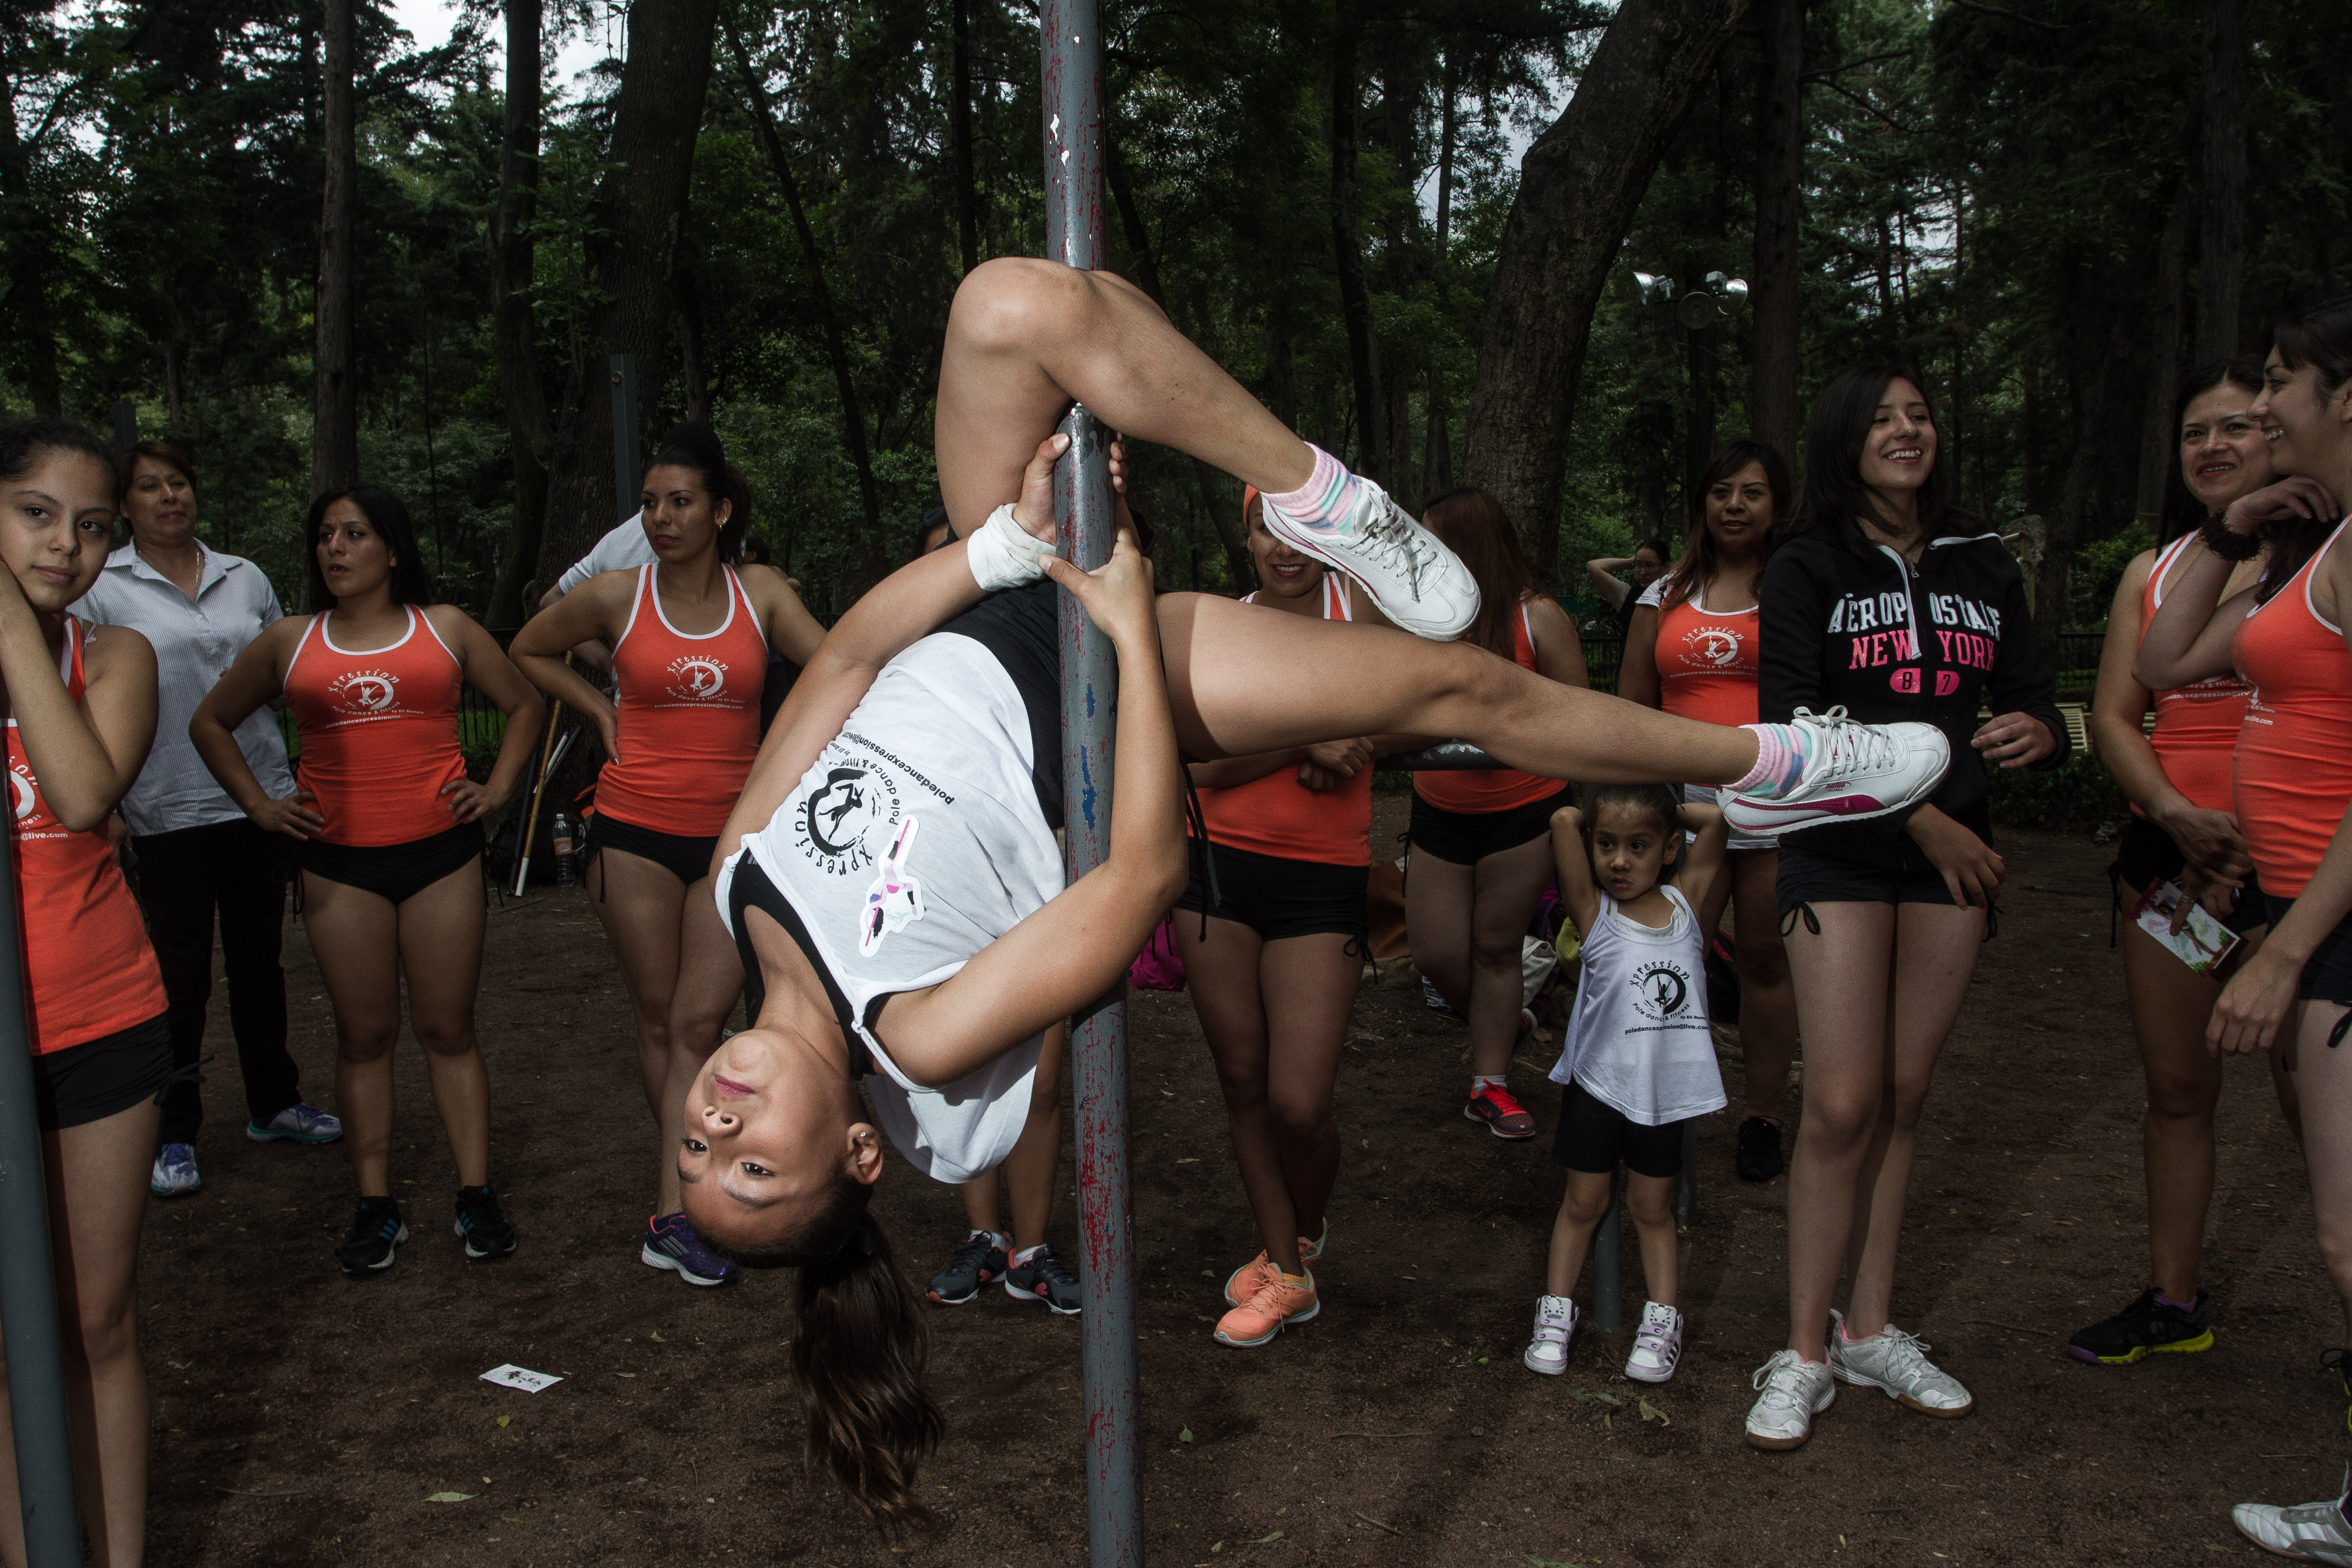 MÉXICO, D.F., 14JUNIO2015.- Decenas de mujeres que practican el Pole Dance, celebraron el Día del Pole Urbano en el Parque Hundido, con una pequeña muestra de la actividad que realizan. 
FOTO: ISAAC ESQUIVEL /CUARTOSCURO.COM